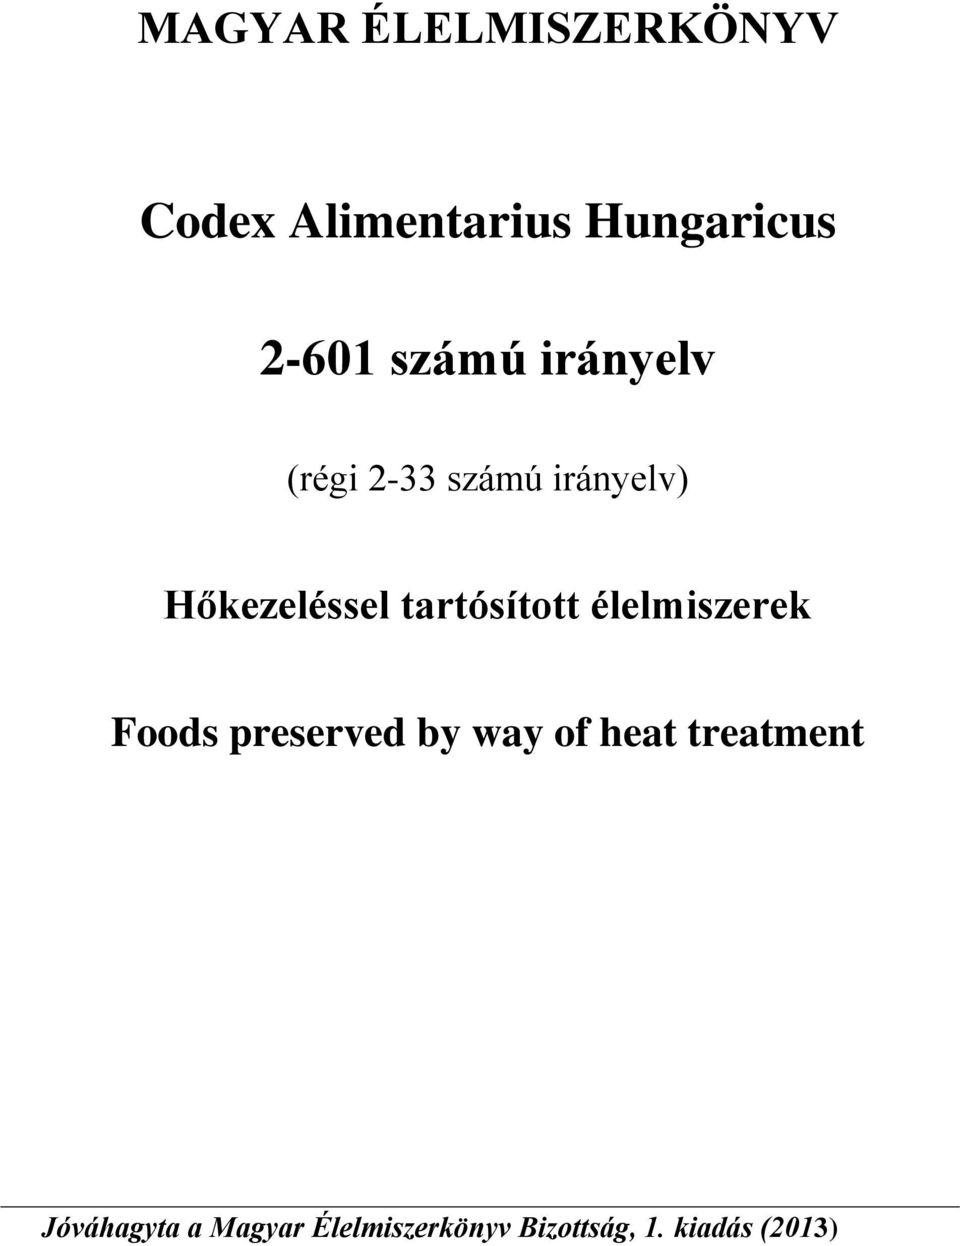 tartósított élelmiszerek Foods preserved by way of heat